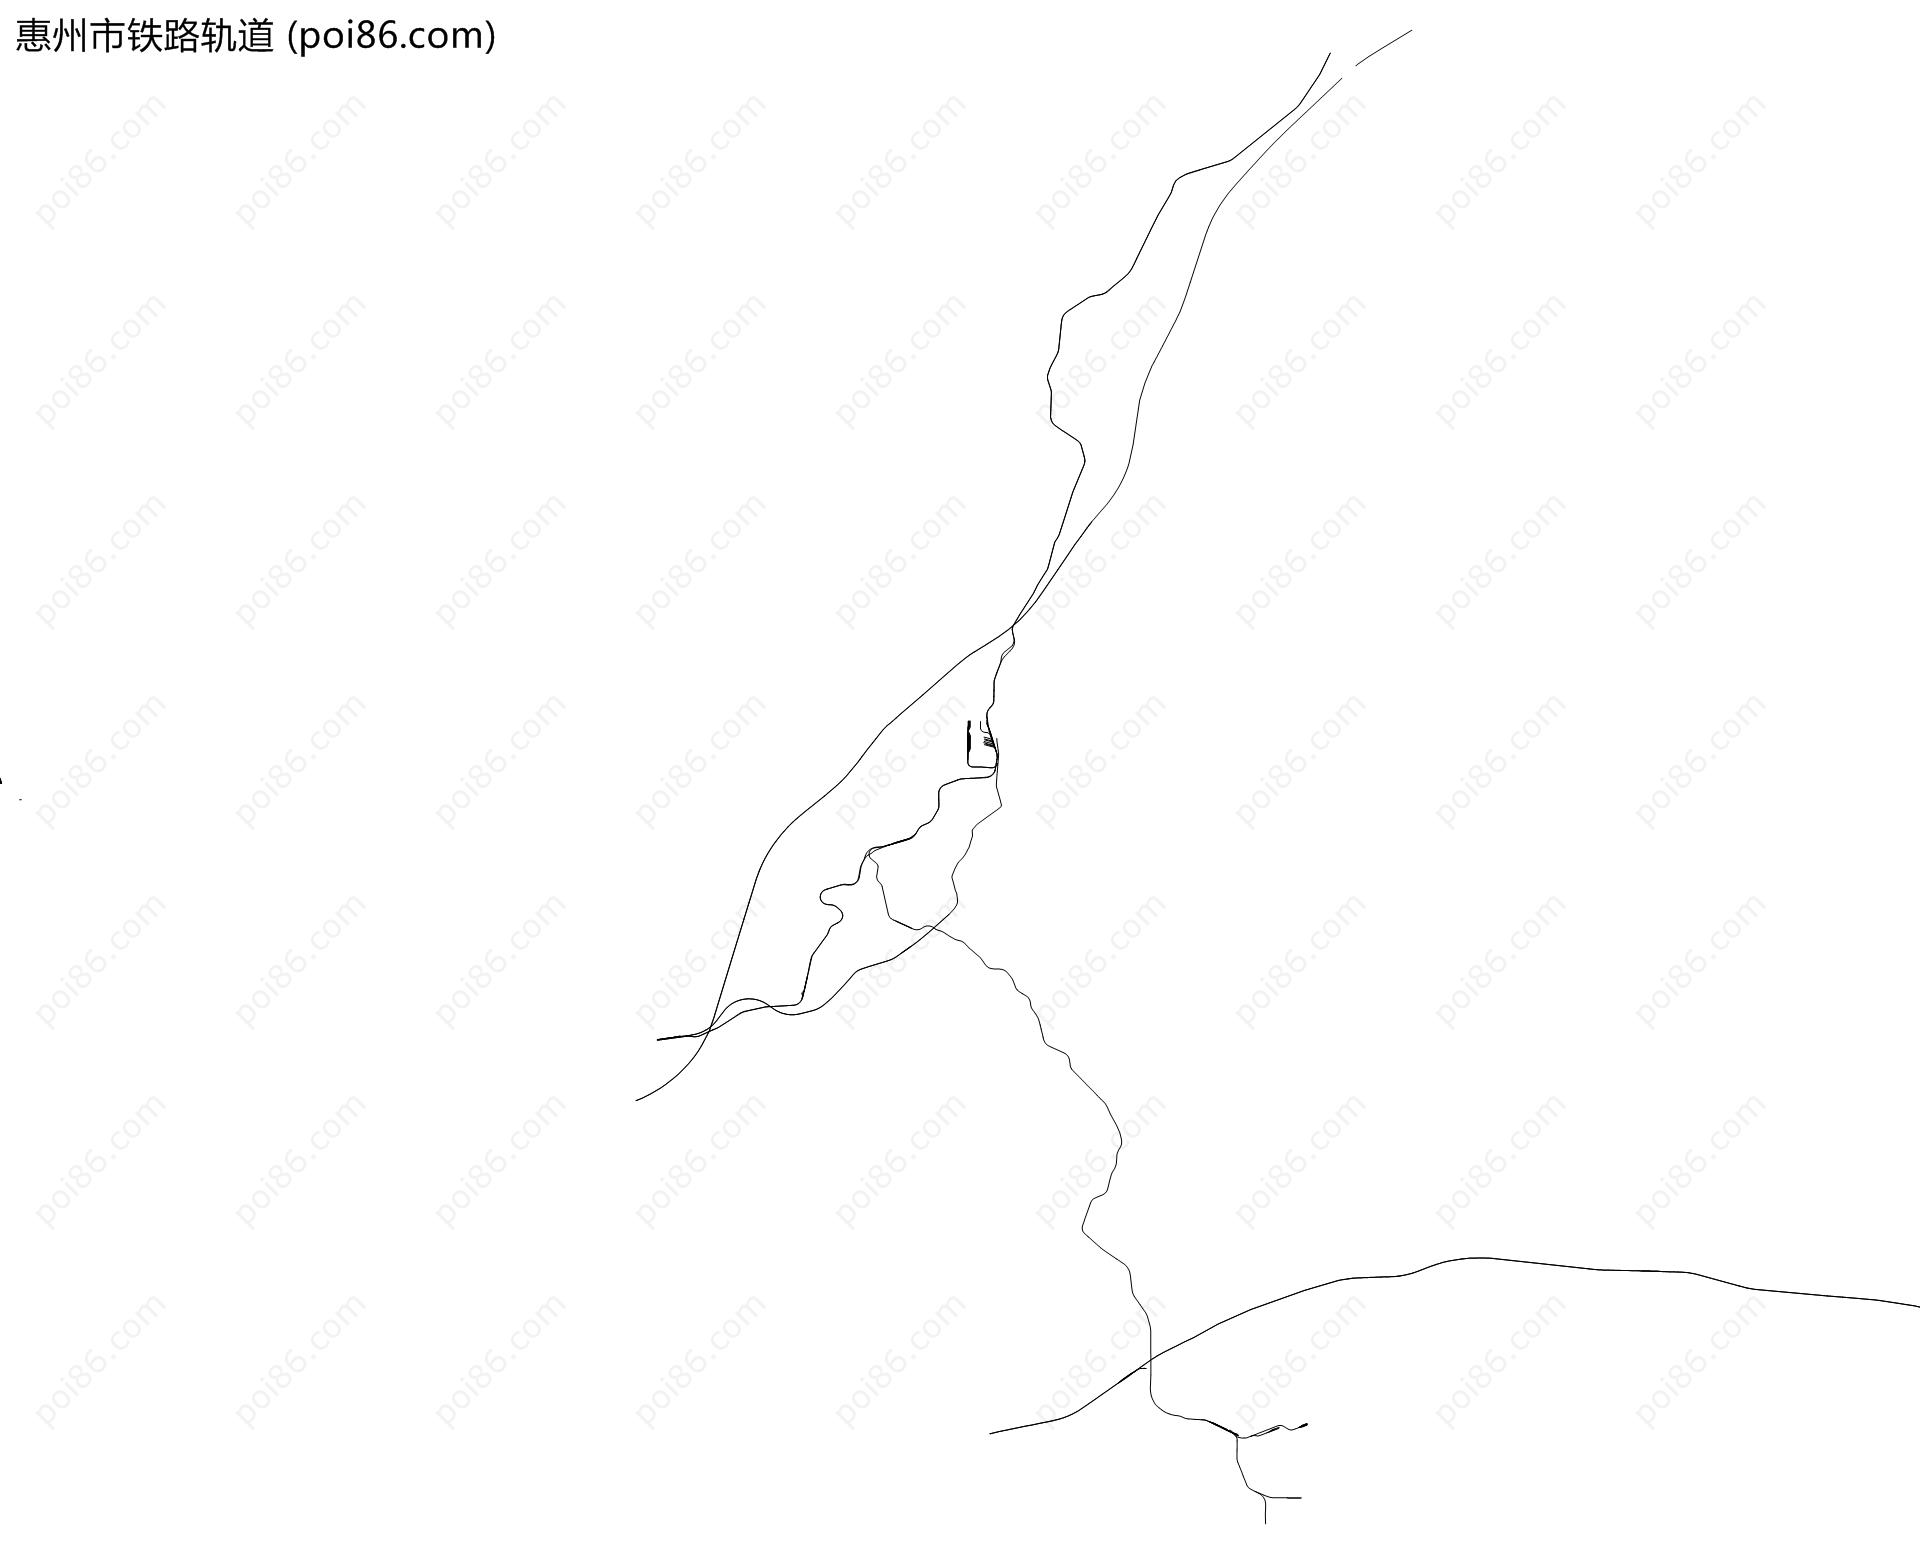 惠州市铁路轨道地图